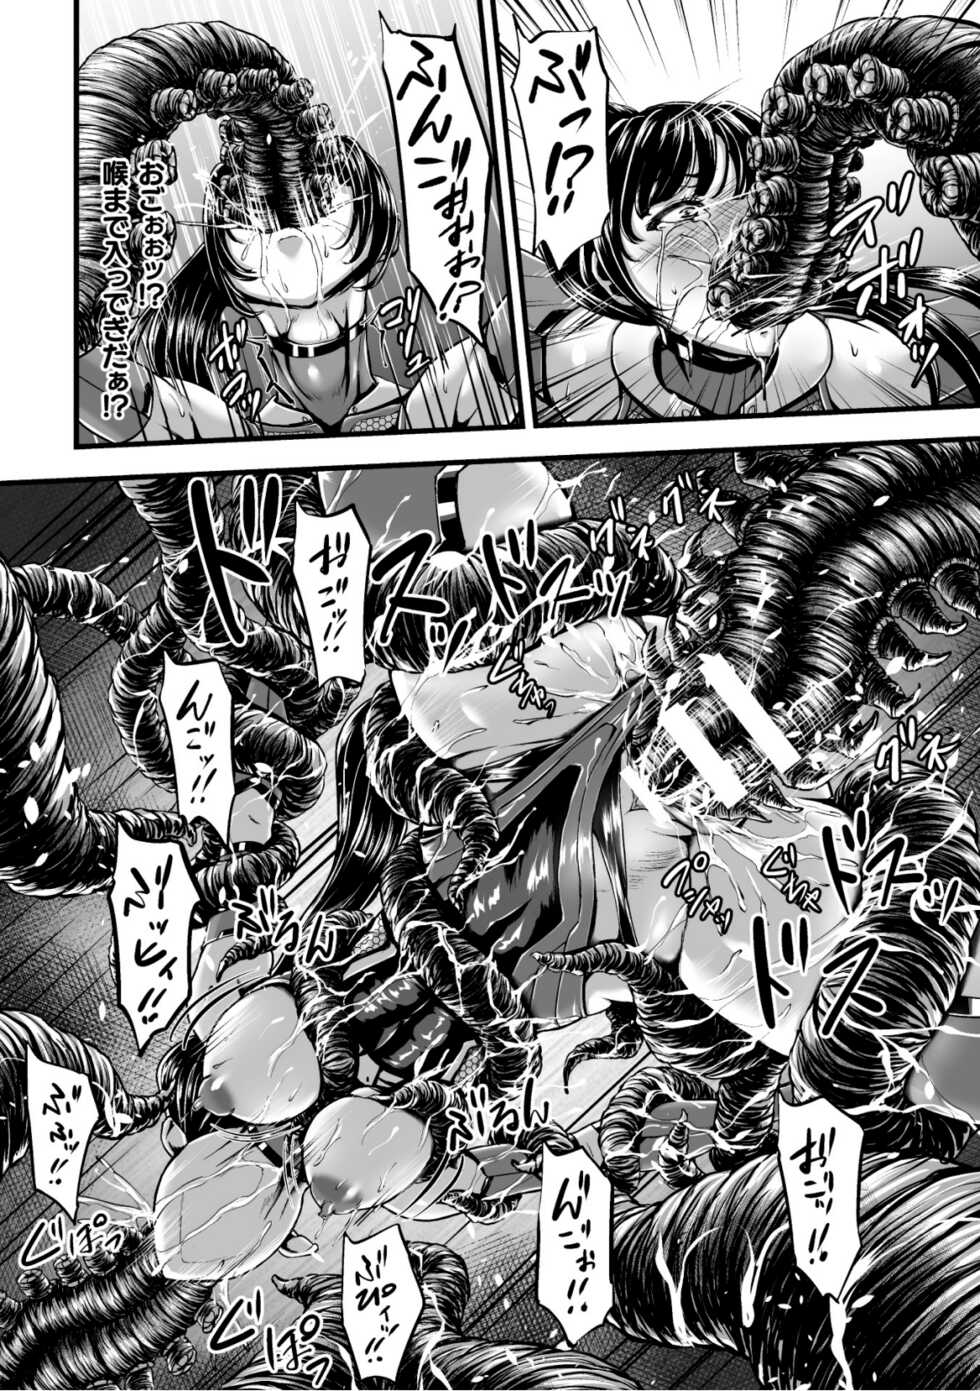 [yuyu] Kangoku Tentacle Battleship Episode 1 - Page 18